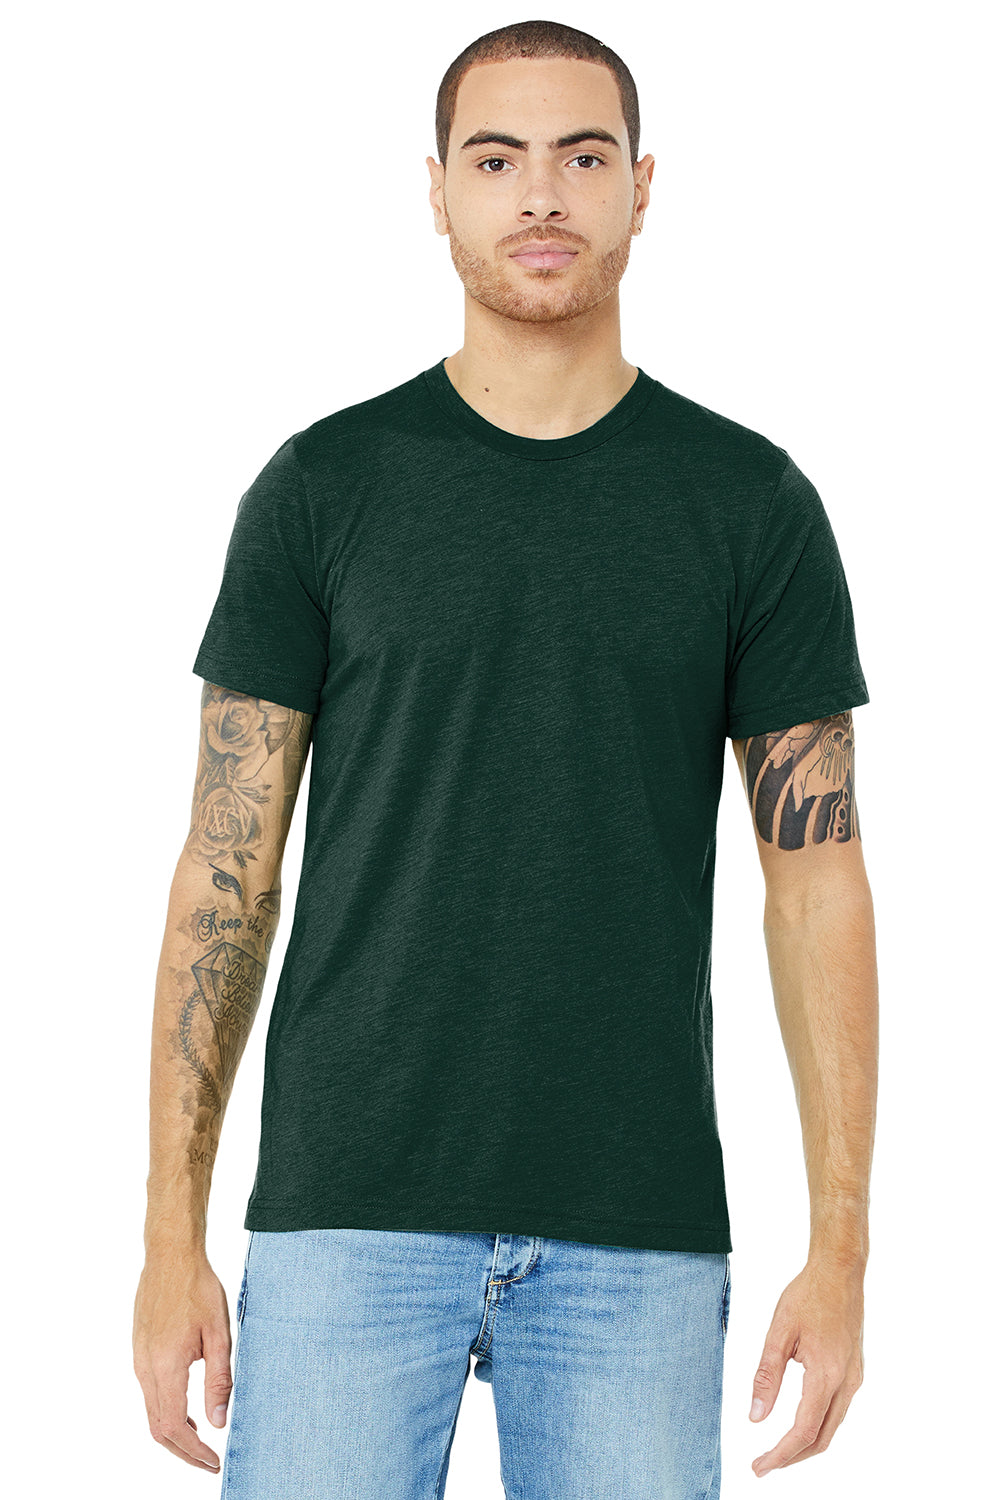 Bella + Canvas BC3413/3413C/3413 Mens Short Sleeve Crewneck T-Shirt Emerald Green Model Front